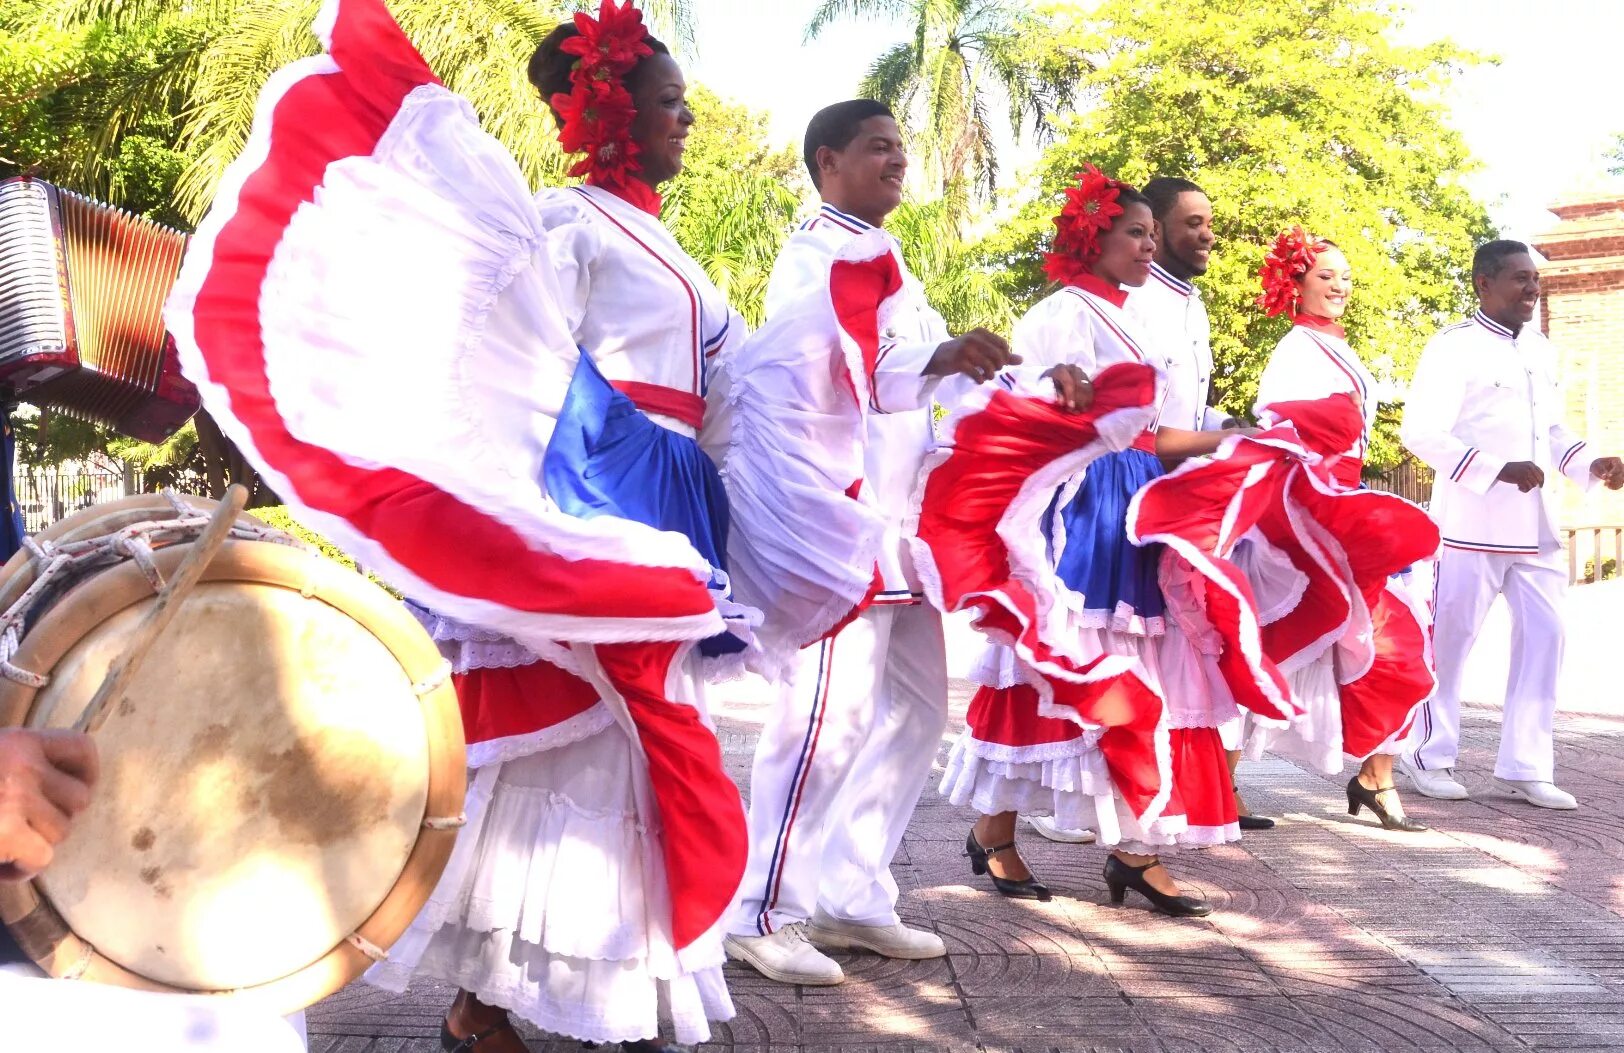 Меренге танец. Меренге танец Доминикана. Танец меренге в Доминикане. Ритмы меренге. Доминикана национальный костюм.